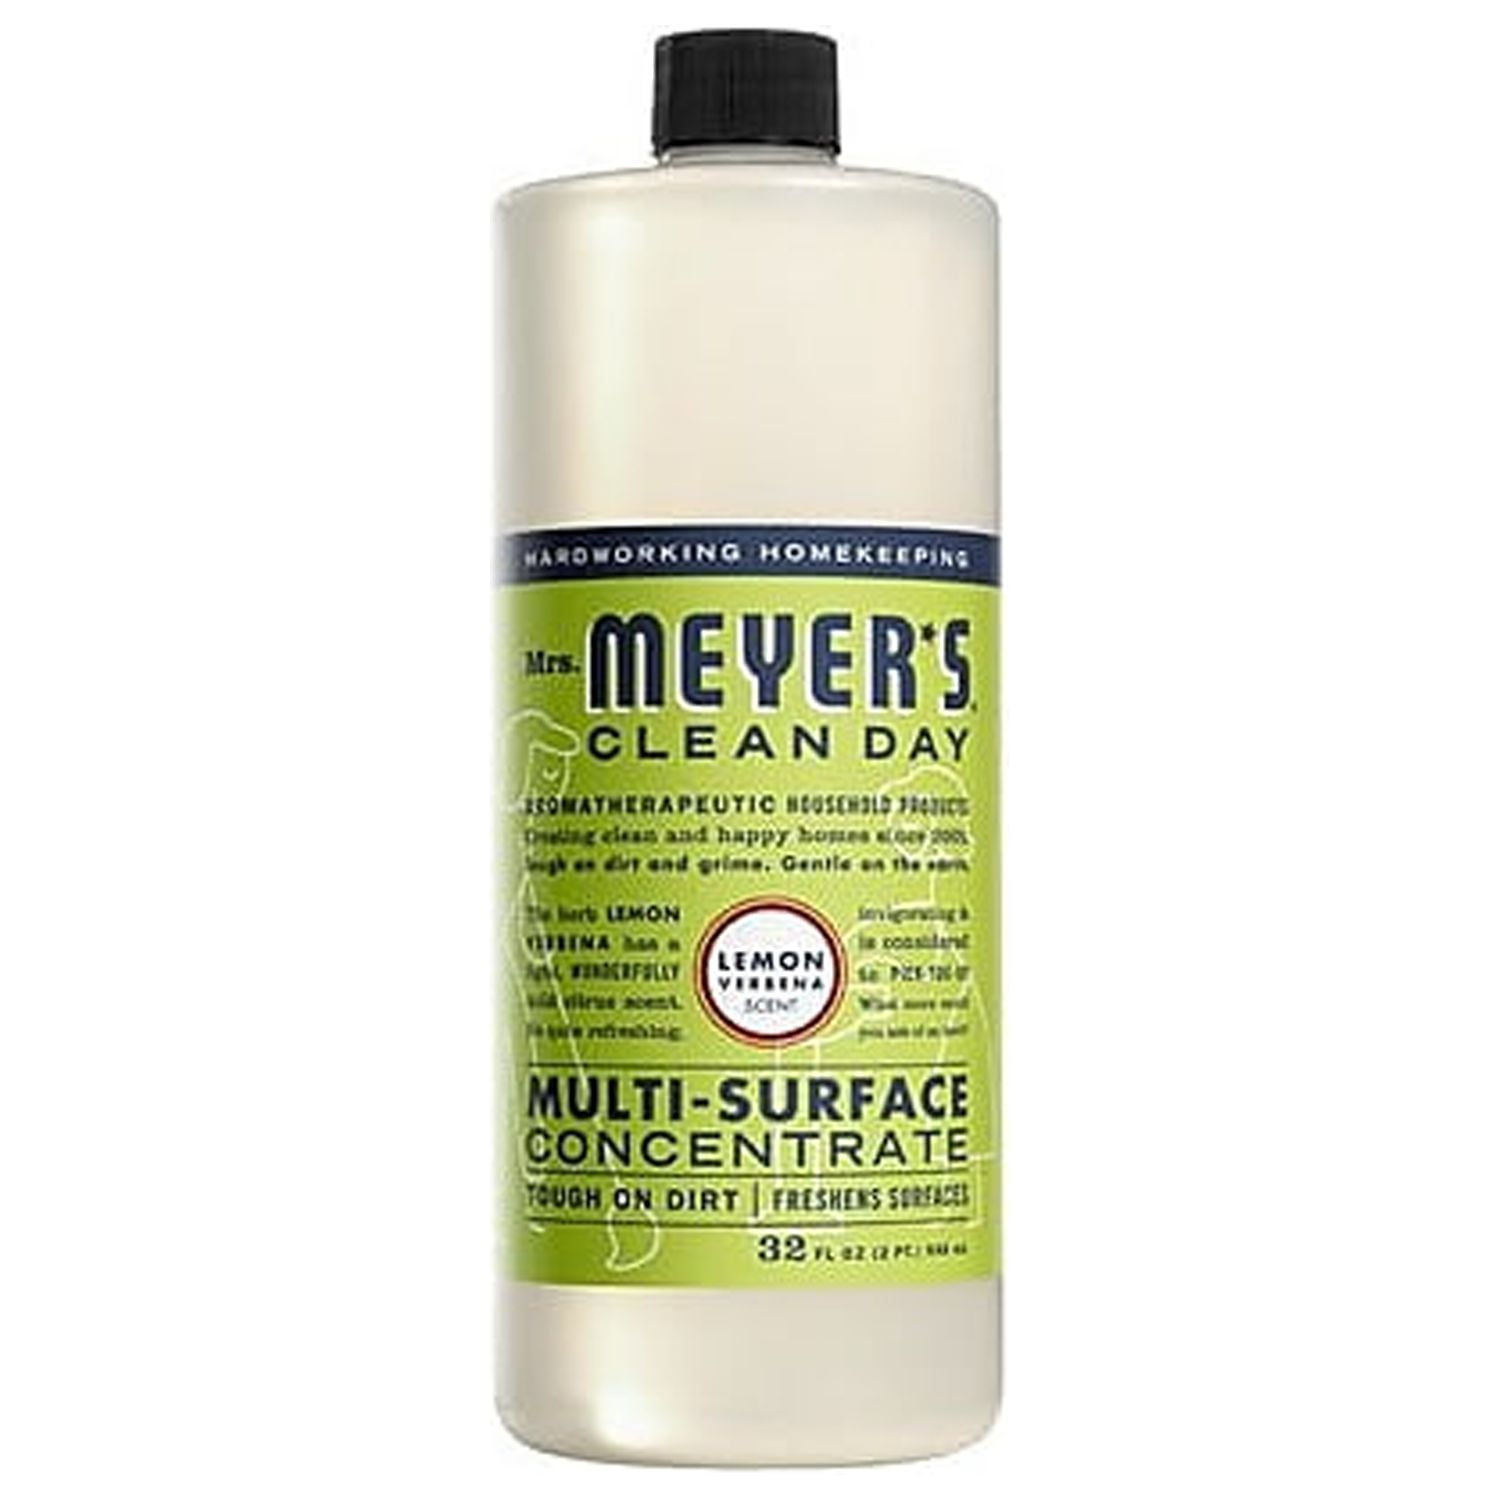 Mr. Clean, Clean Freak Multi-Surface Spray + Refill, Lemon Zest (62.9 fl.  oz.)